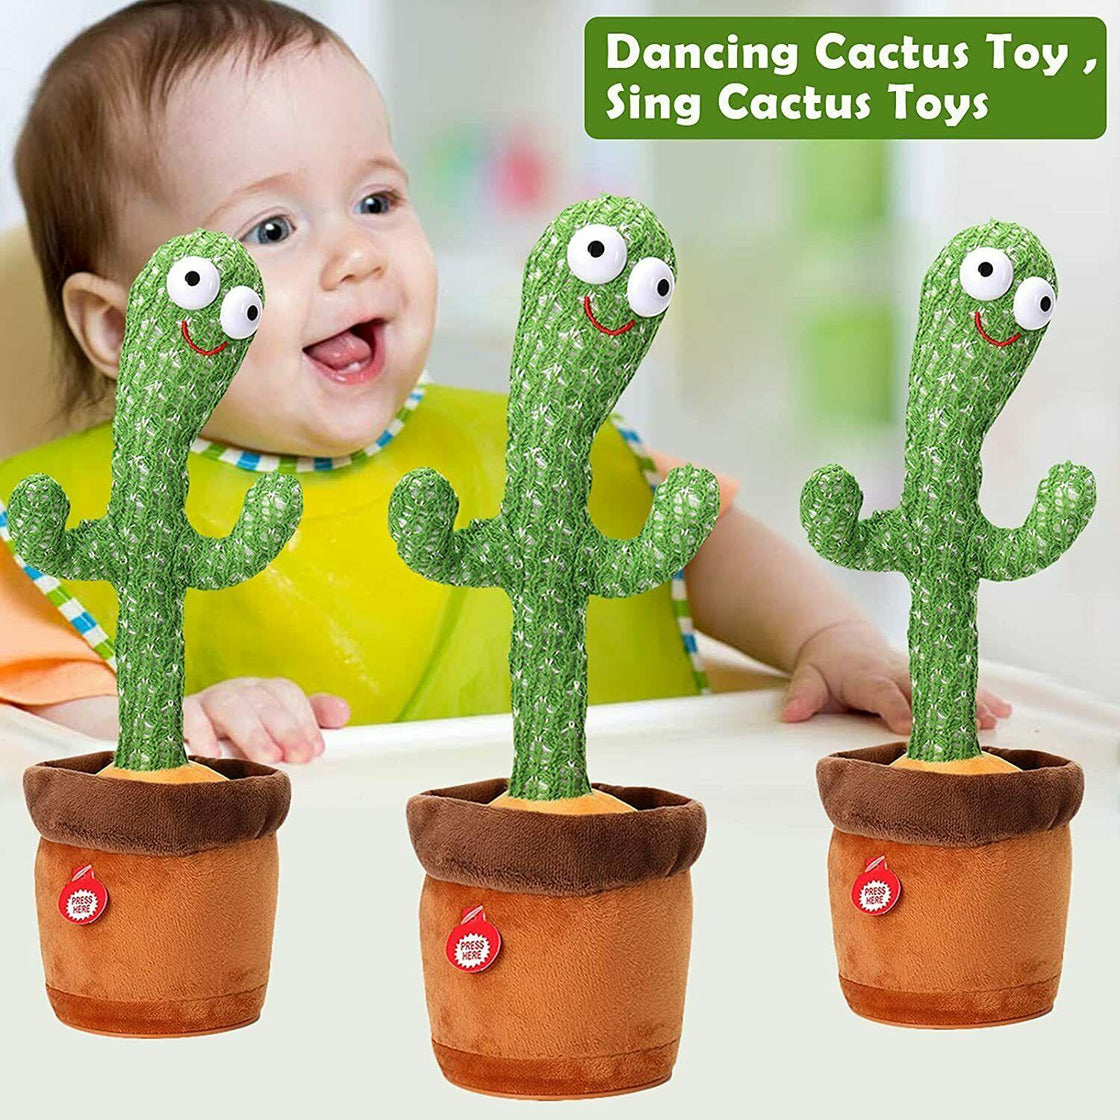 Singing Cactus Toy Cute Dancing Cactus Plush Toy Electronic Shake Kids Toy Gift - JigyasaLLC